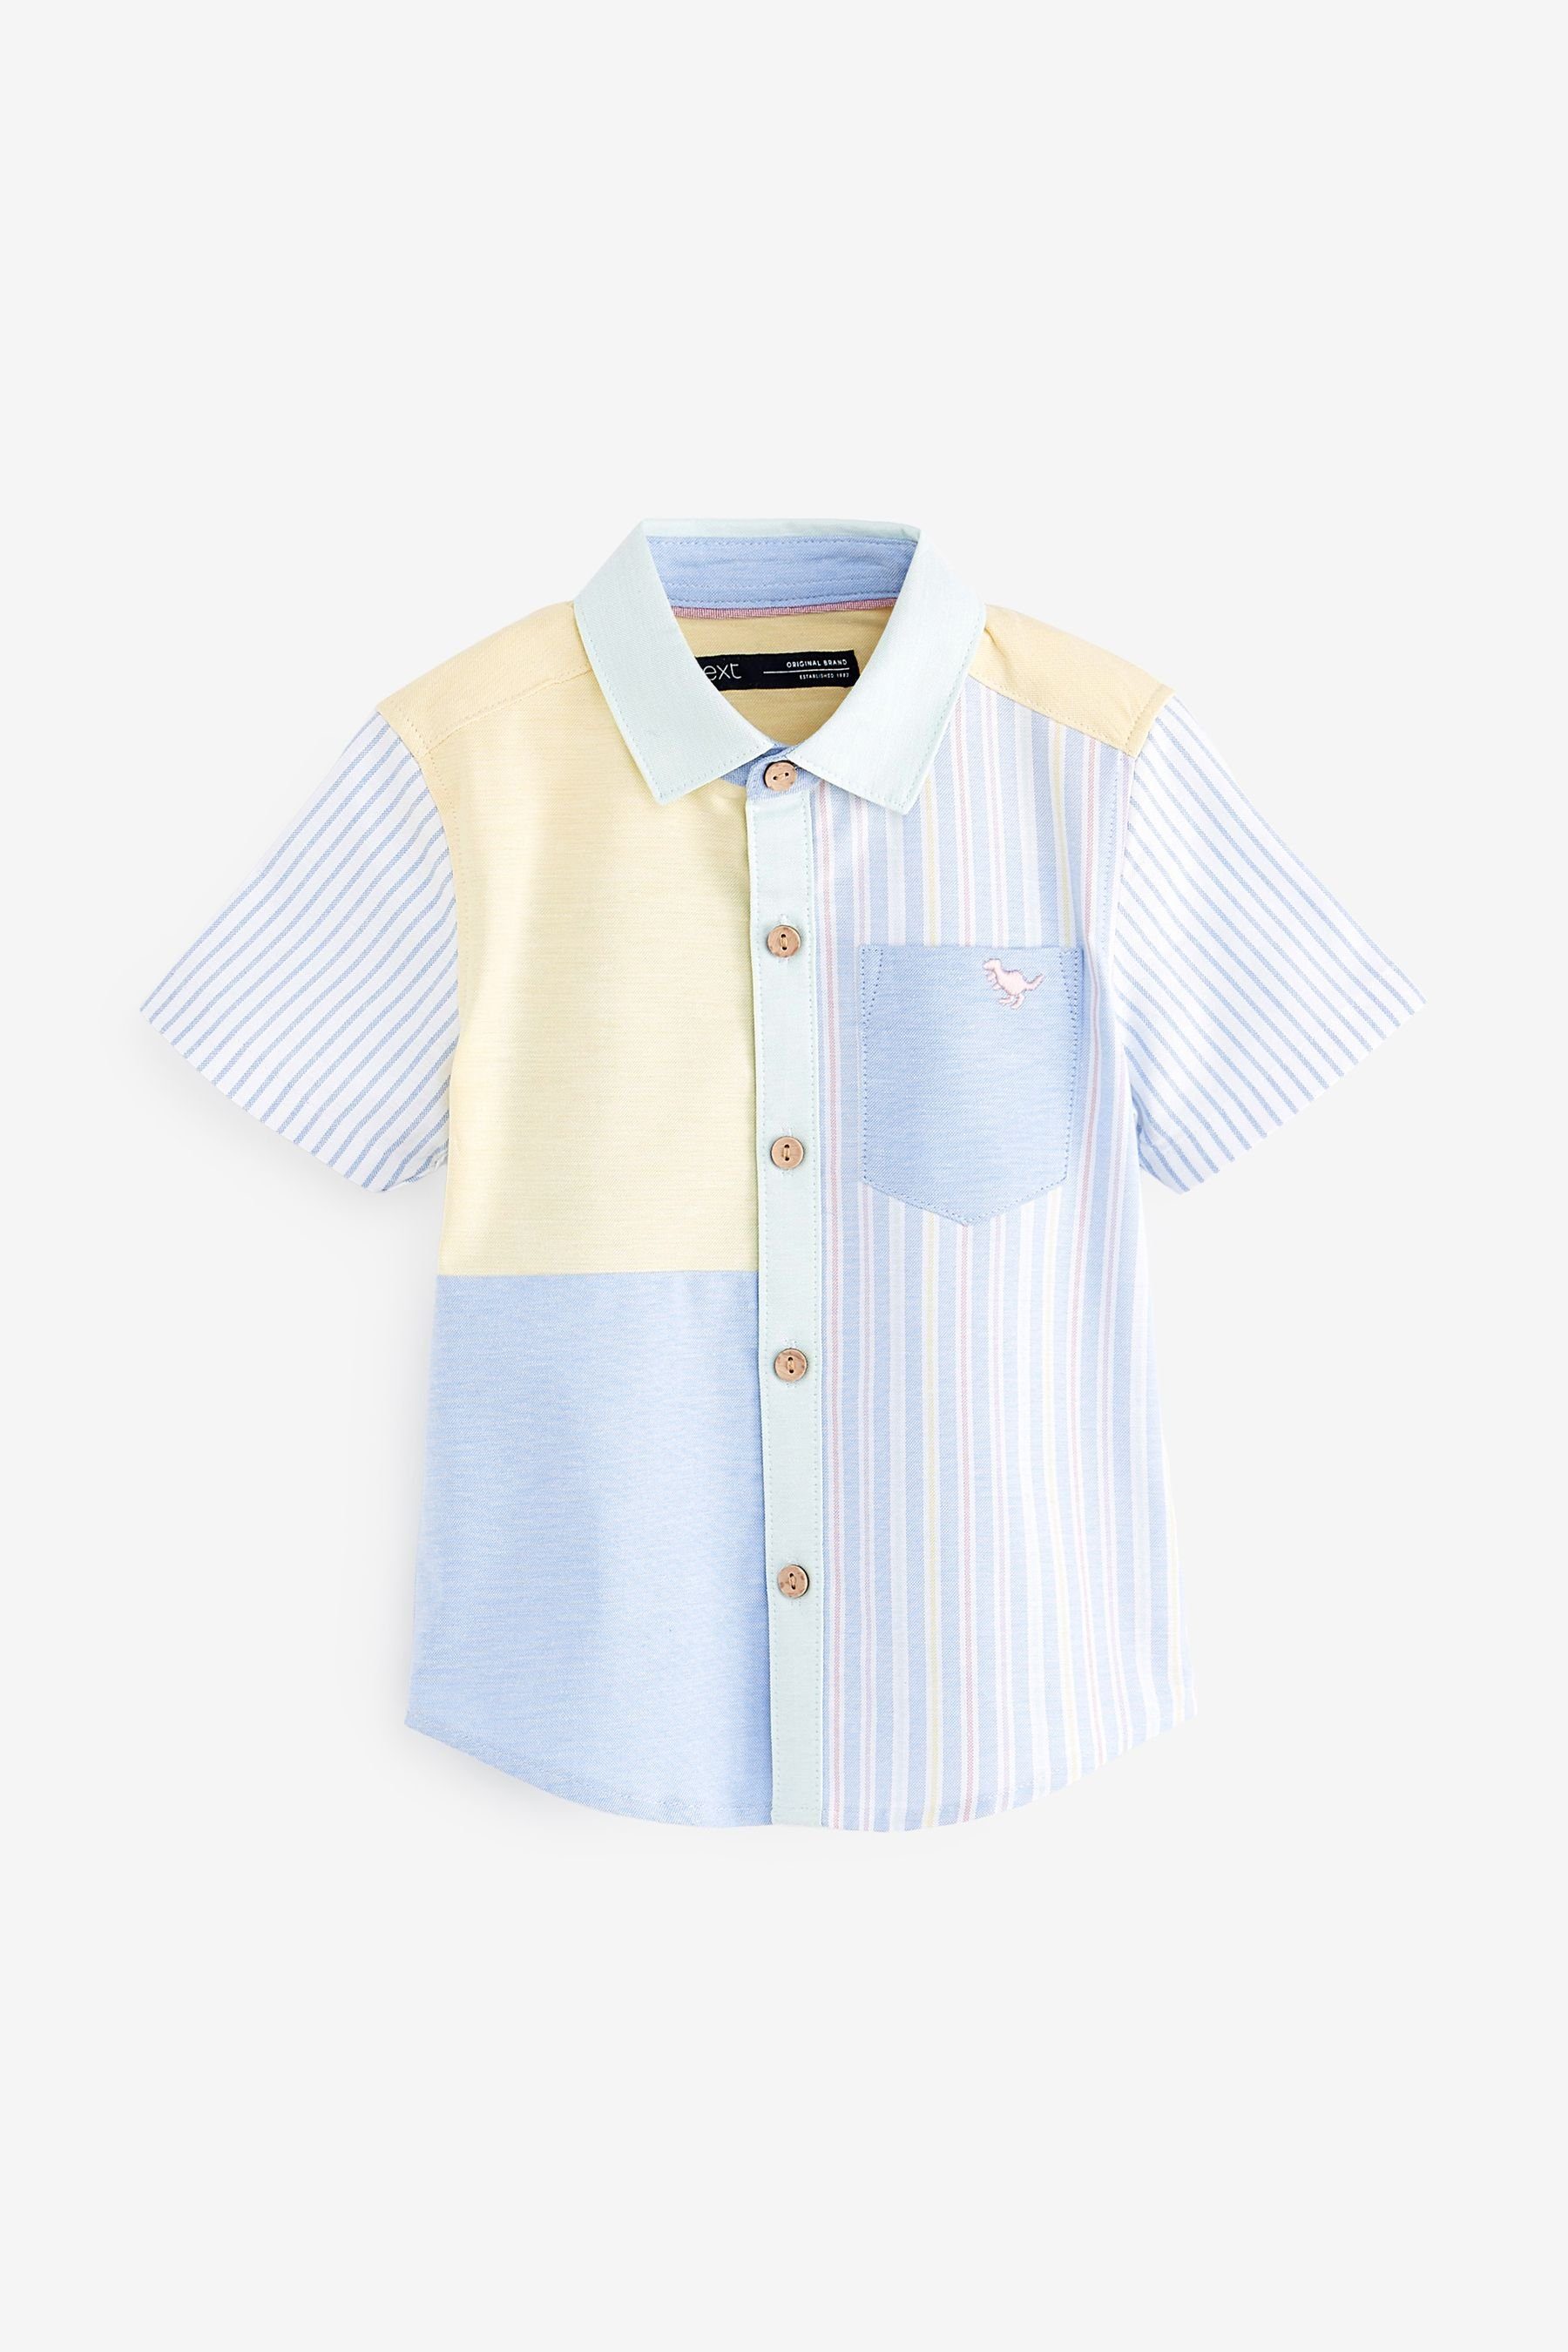 Kinder Jungen (Gr. 50 - 92) Next Kurzarmhemd Kurzärmeliges Oxford-Hemd mit gespleißten Ärmeln